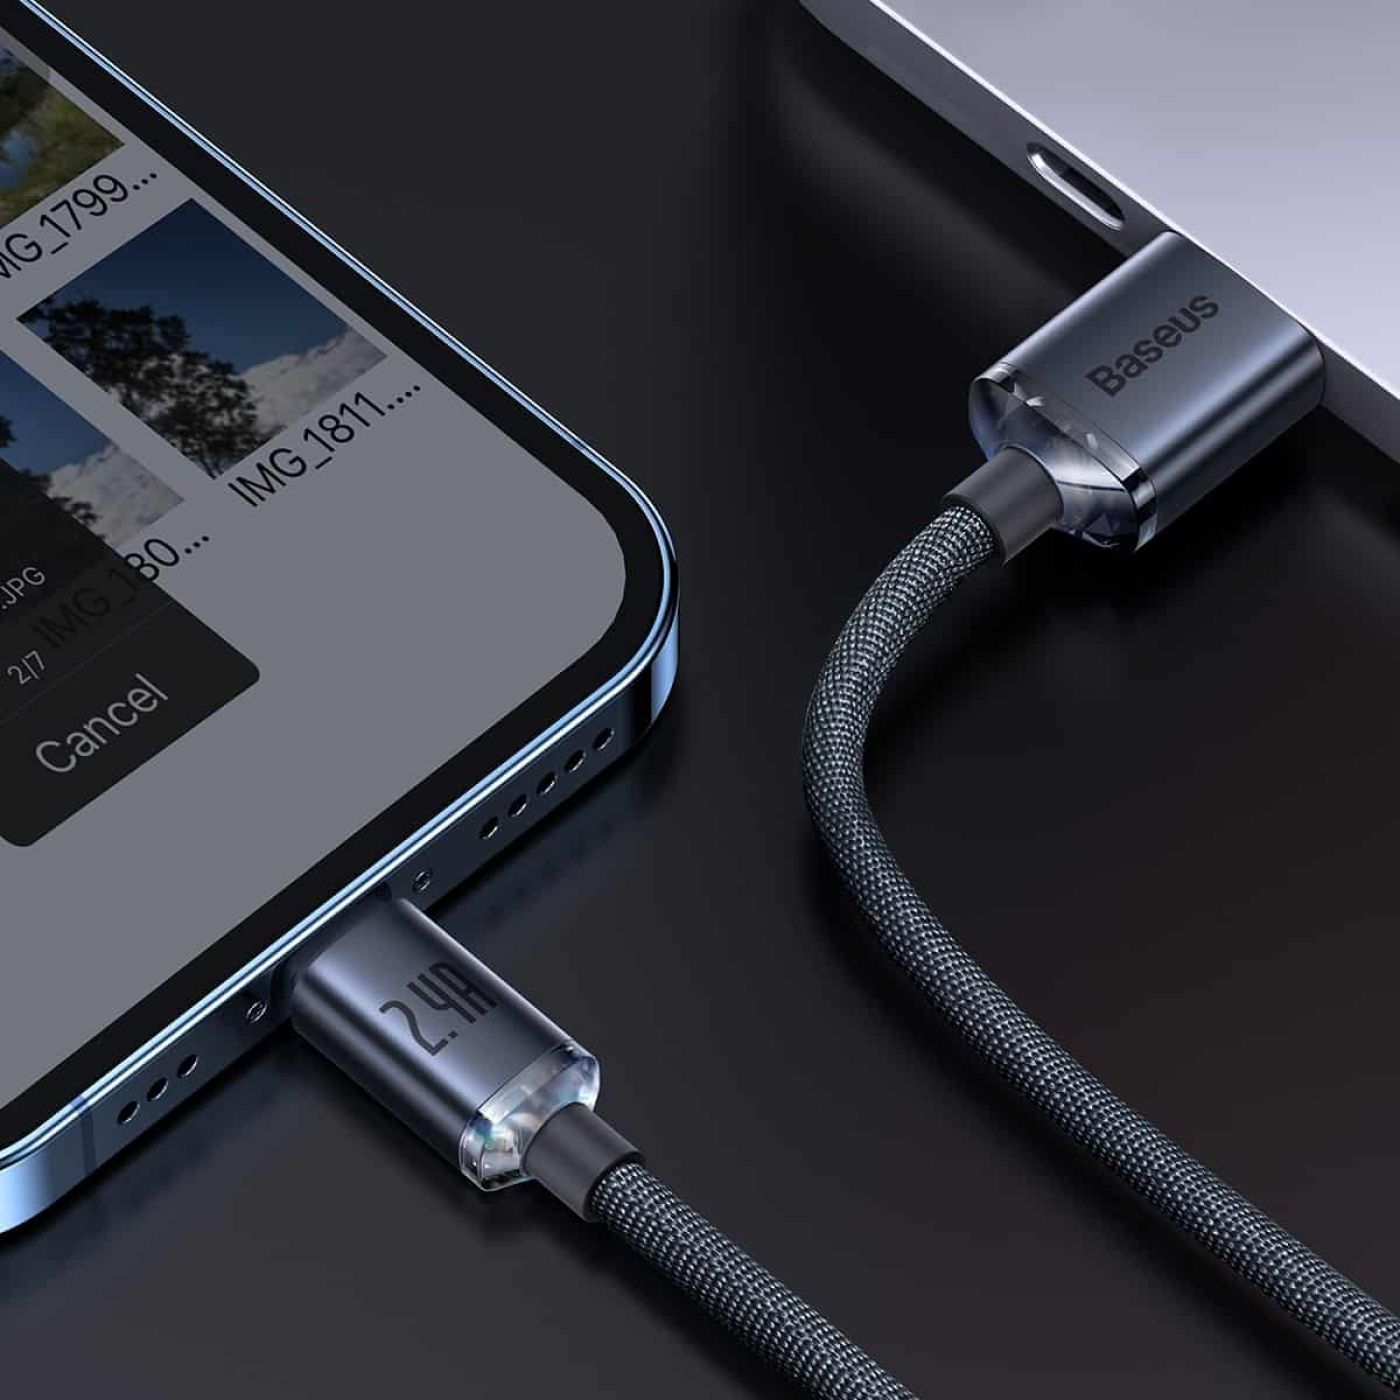 Cáp sạc iPhone Baseus Crystal Series USB to lightning 2.4A dài 1,2m